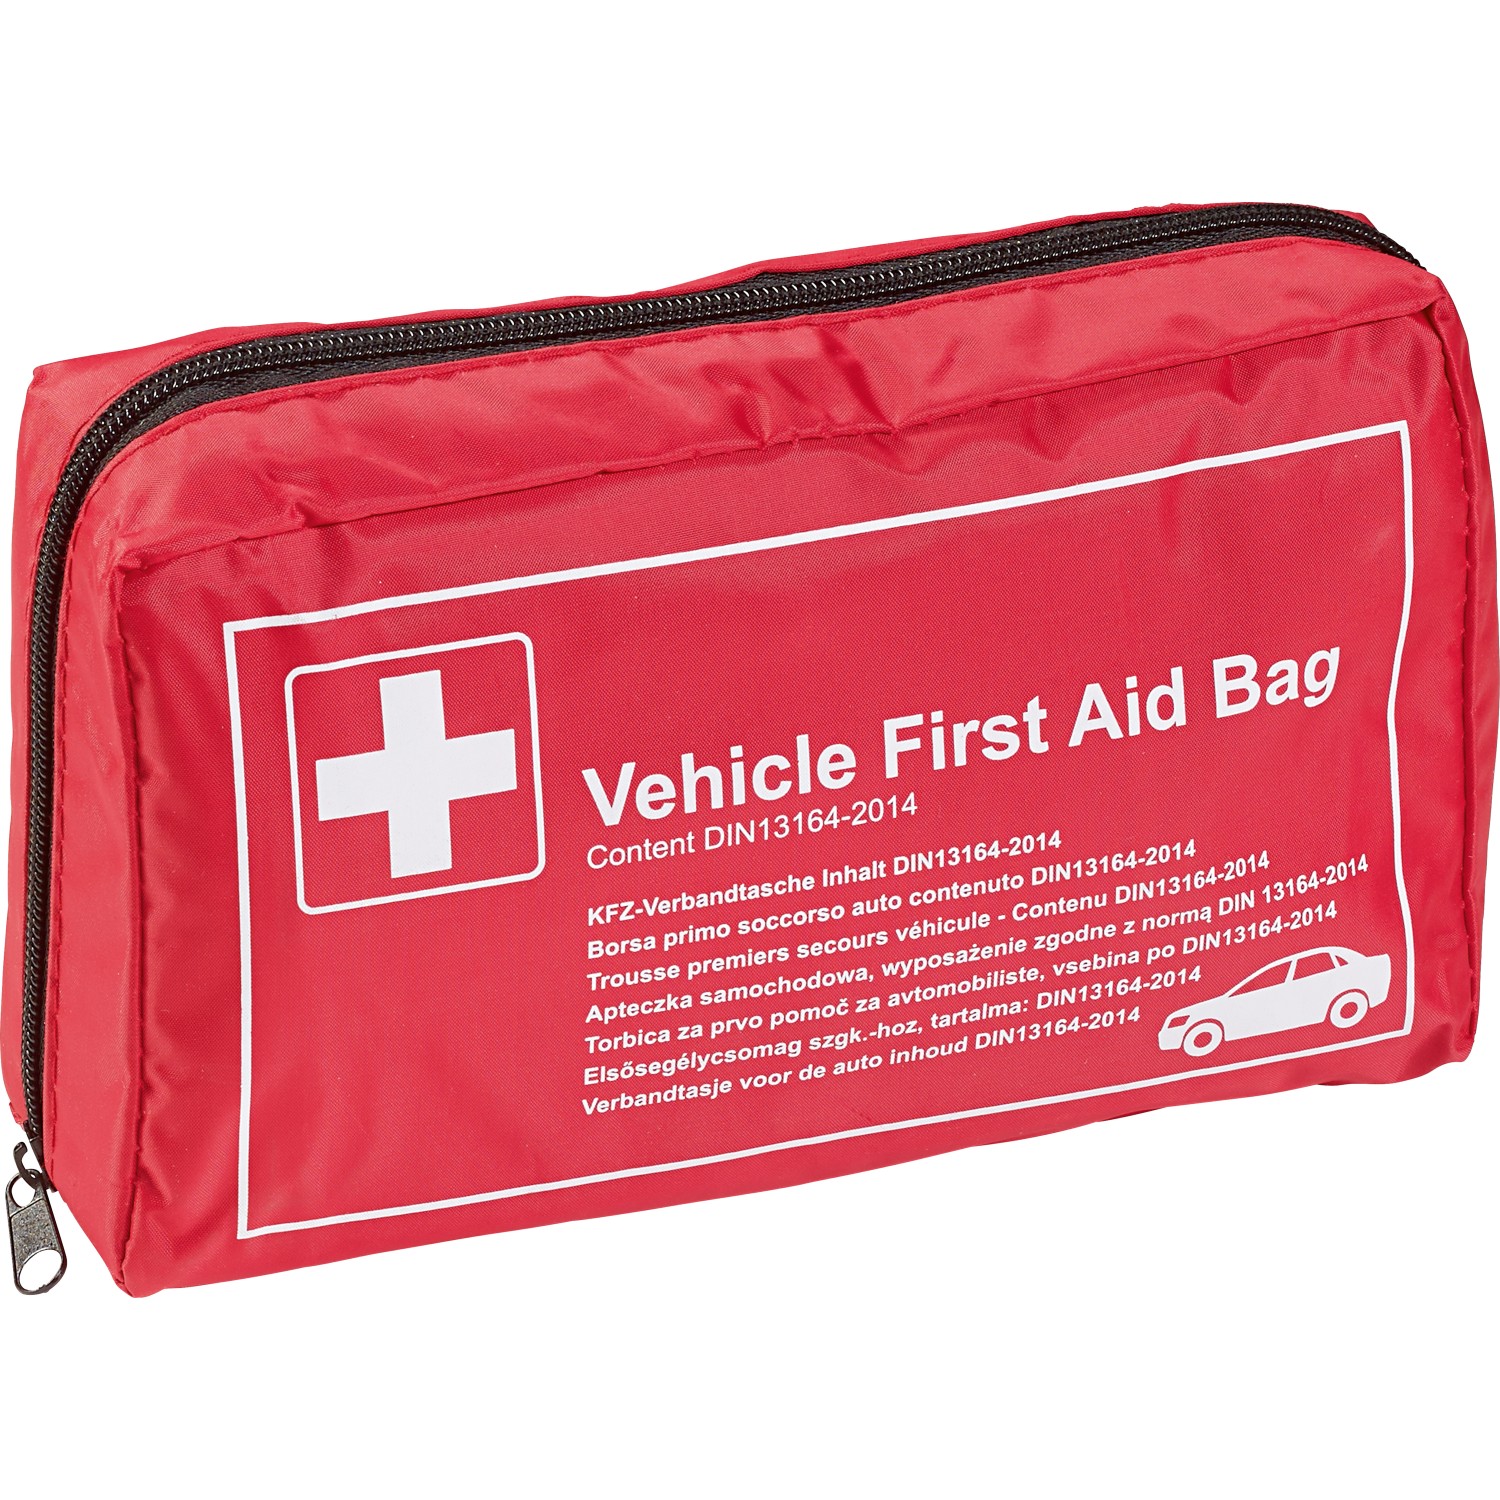 Trousse de premiers secours pour véhicule selon DIN 13164